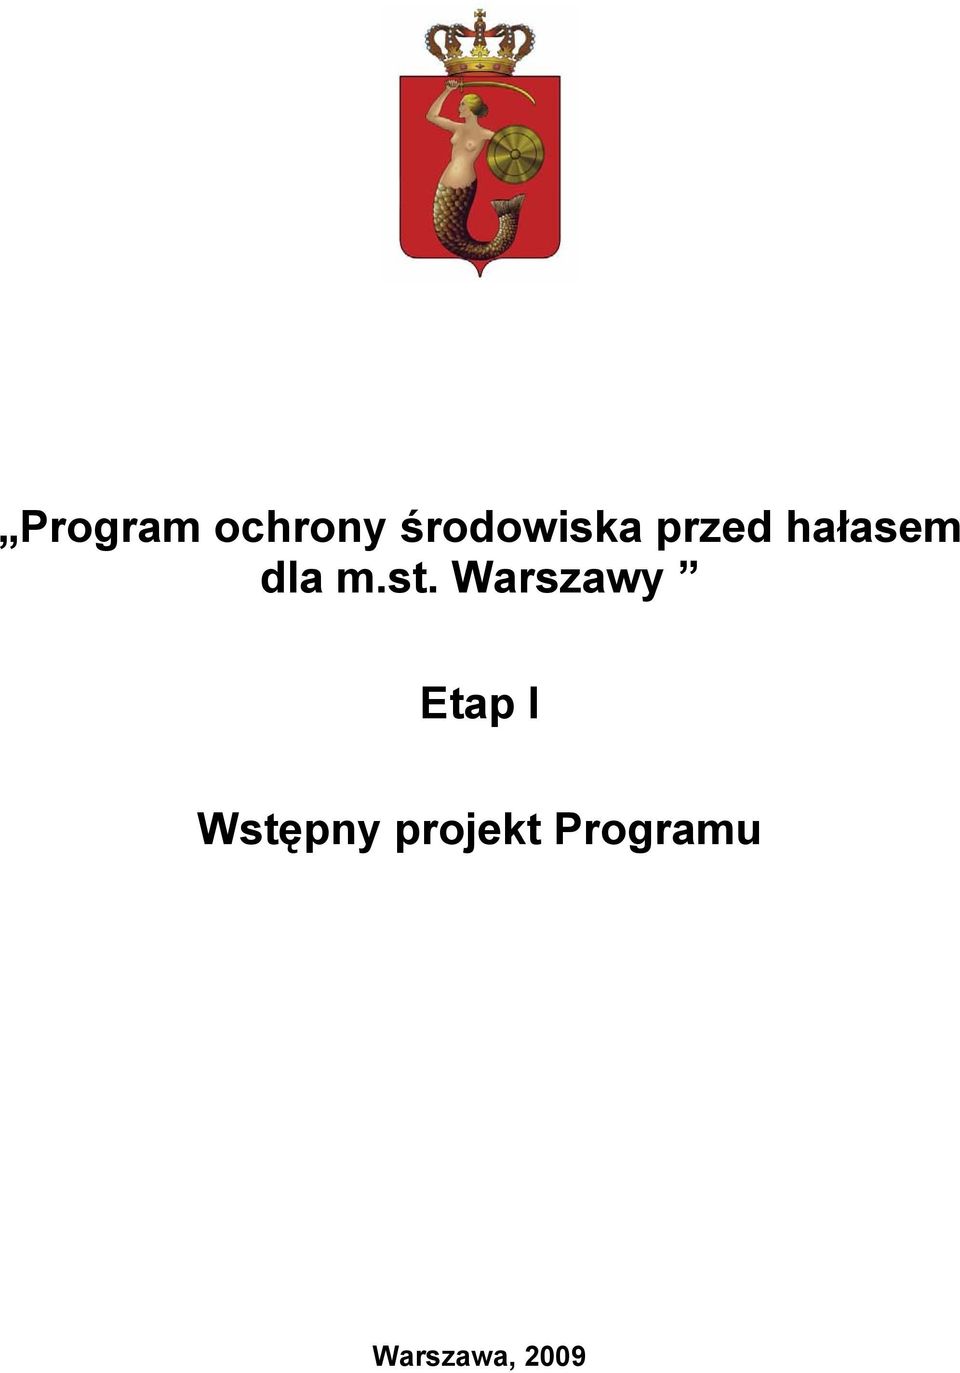 Warszawy Etap I Wstępny